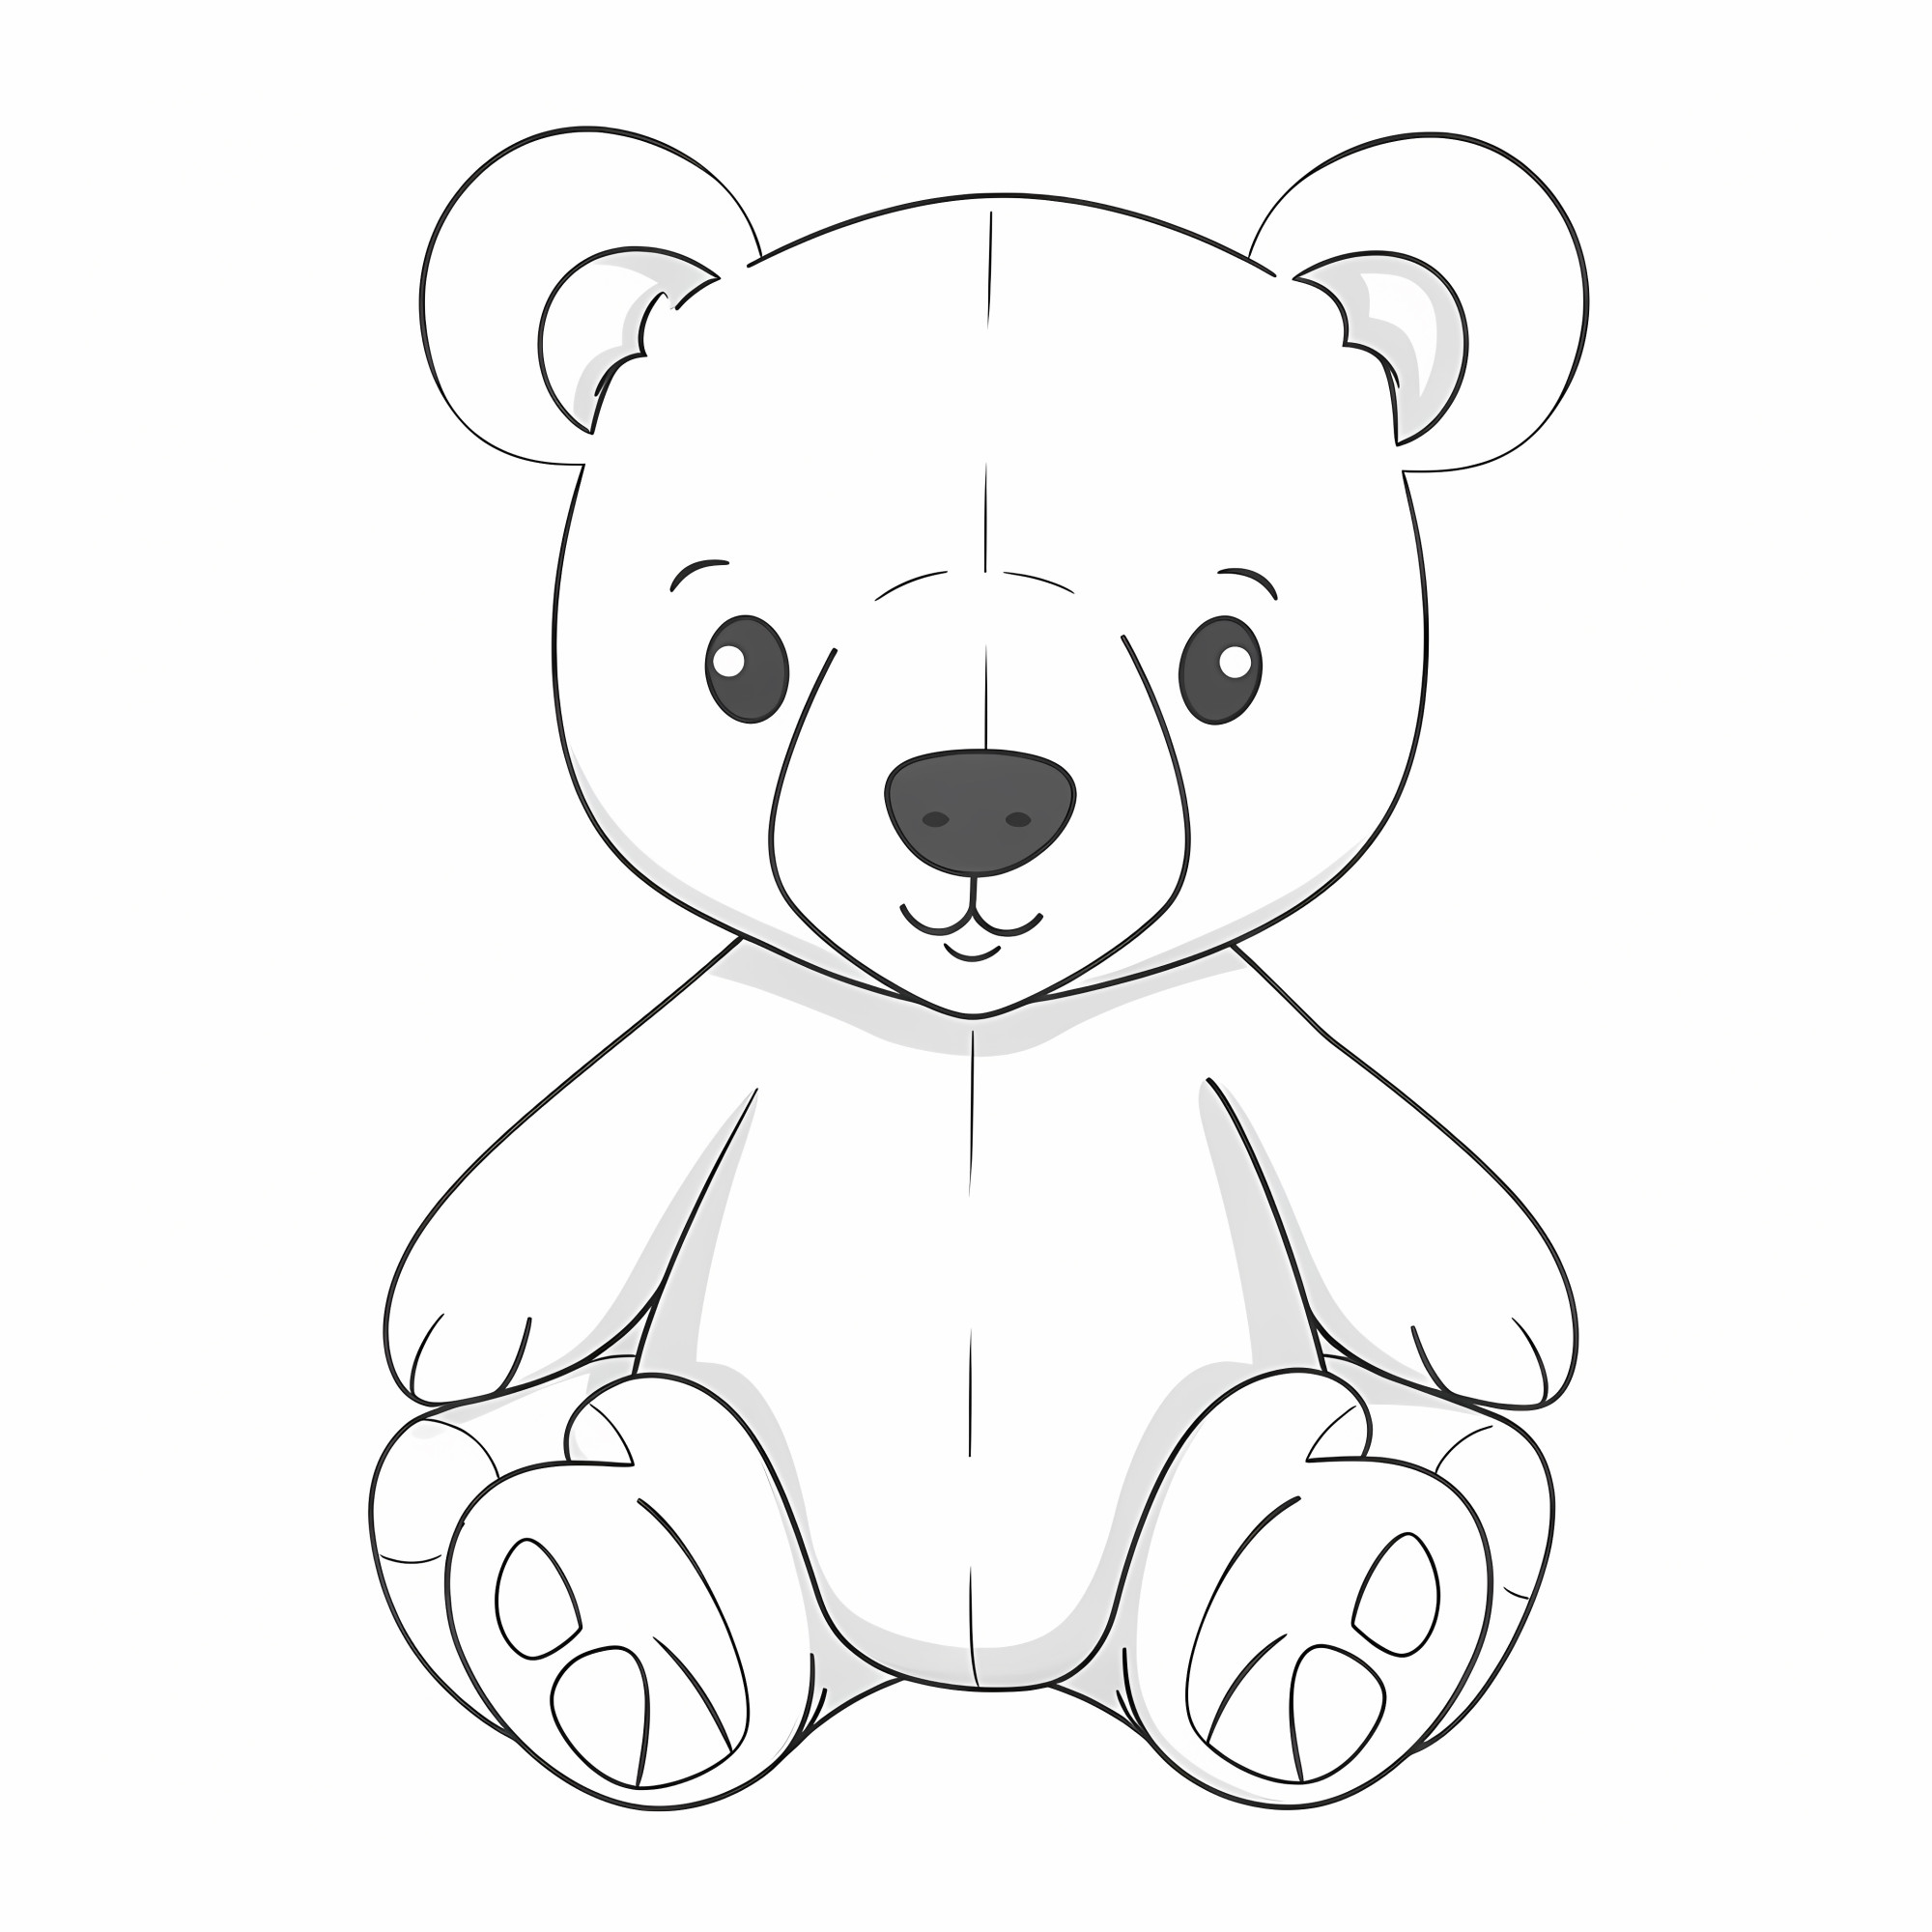 Раскраска для детей: игрушка плюшевого медведя с ушками